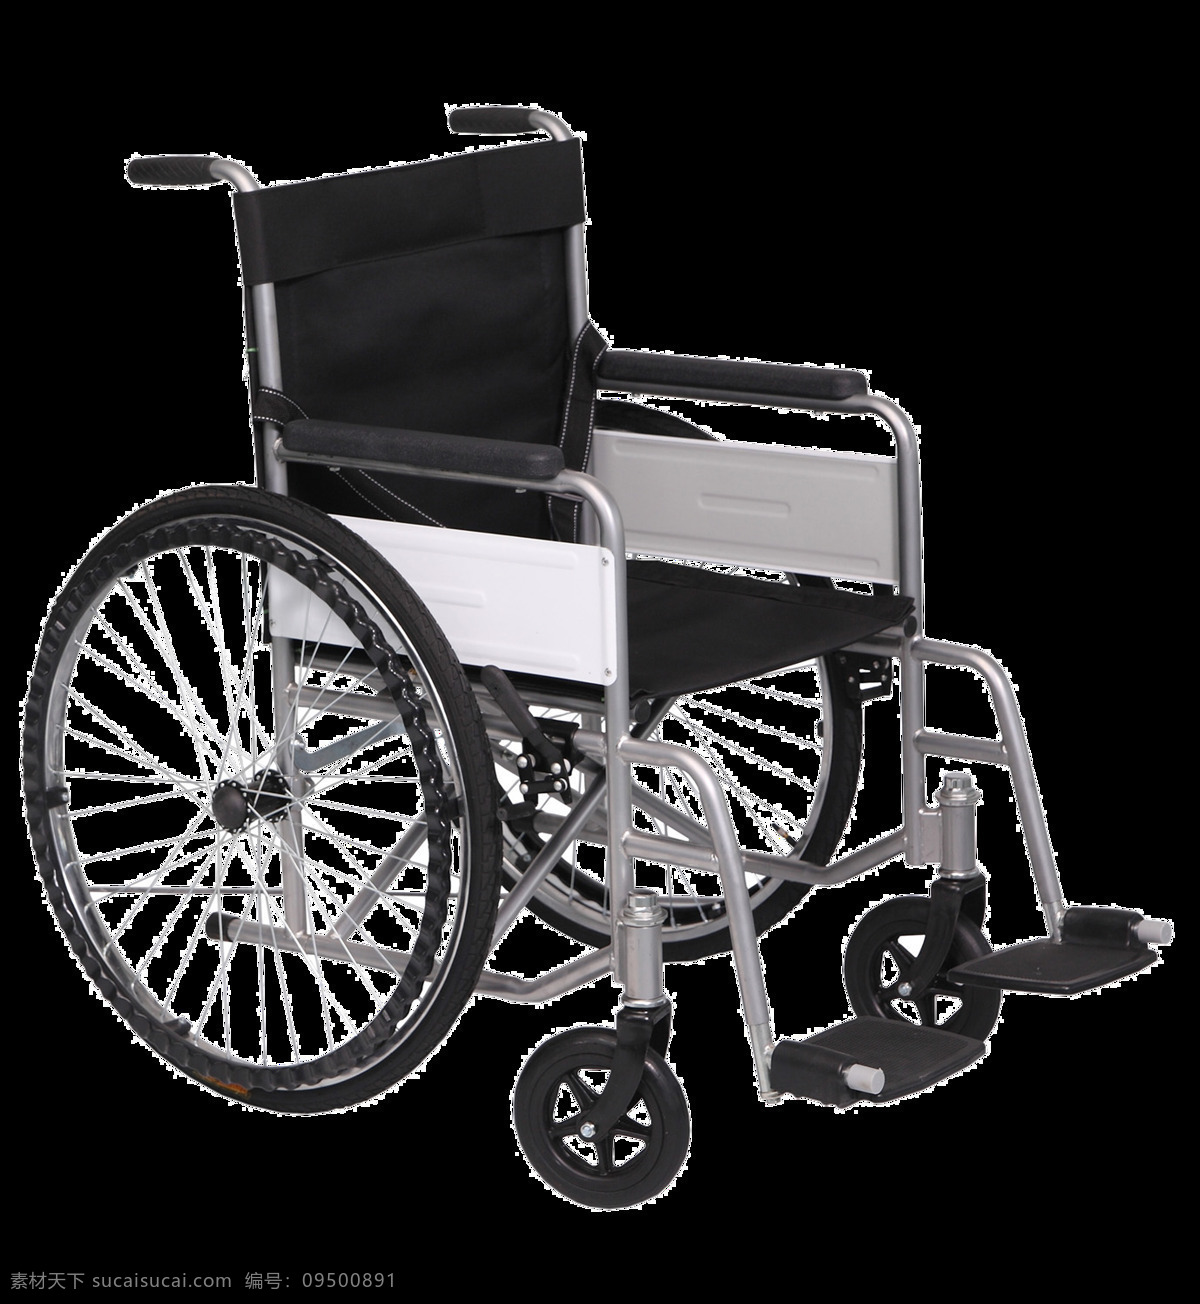 残疾 轮椅 图 免 抠 透明 层 木轮椅 越野轮椅 小轮轮椅 手摇轮椅 轮椅轮子 车载轮椅 老年轮椅 竞速轮椅 轮椅设计 残疾轮椅 折叠轮椅 智能轮椅 医院轮椅 轮椅图片